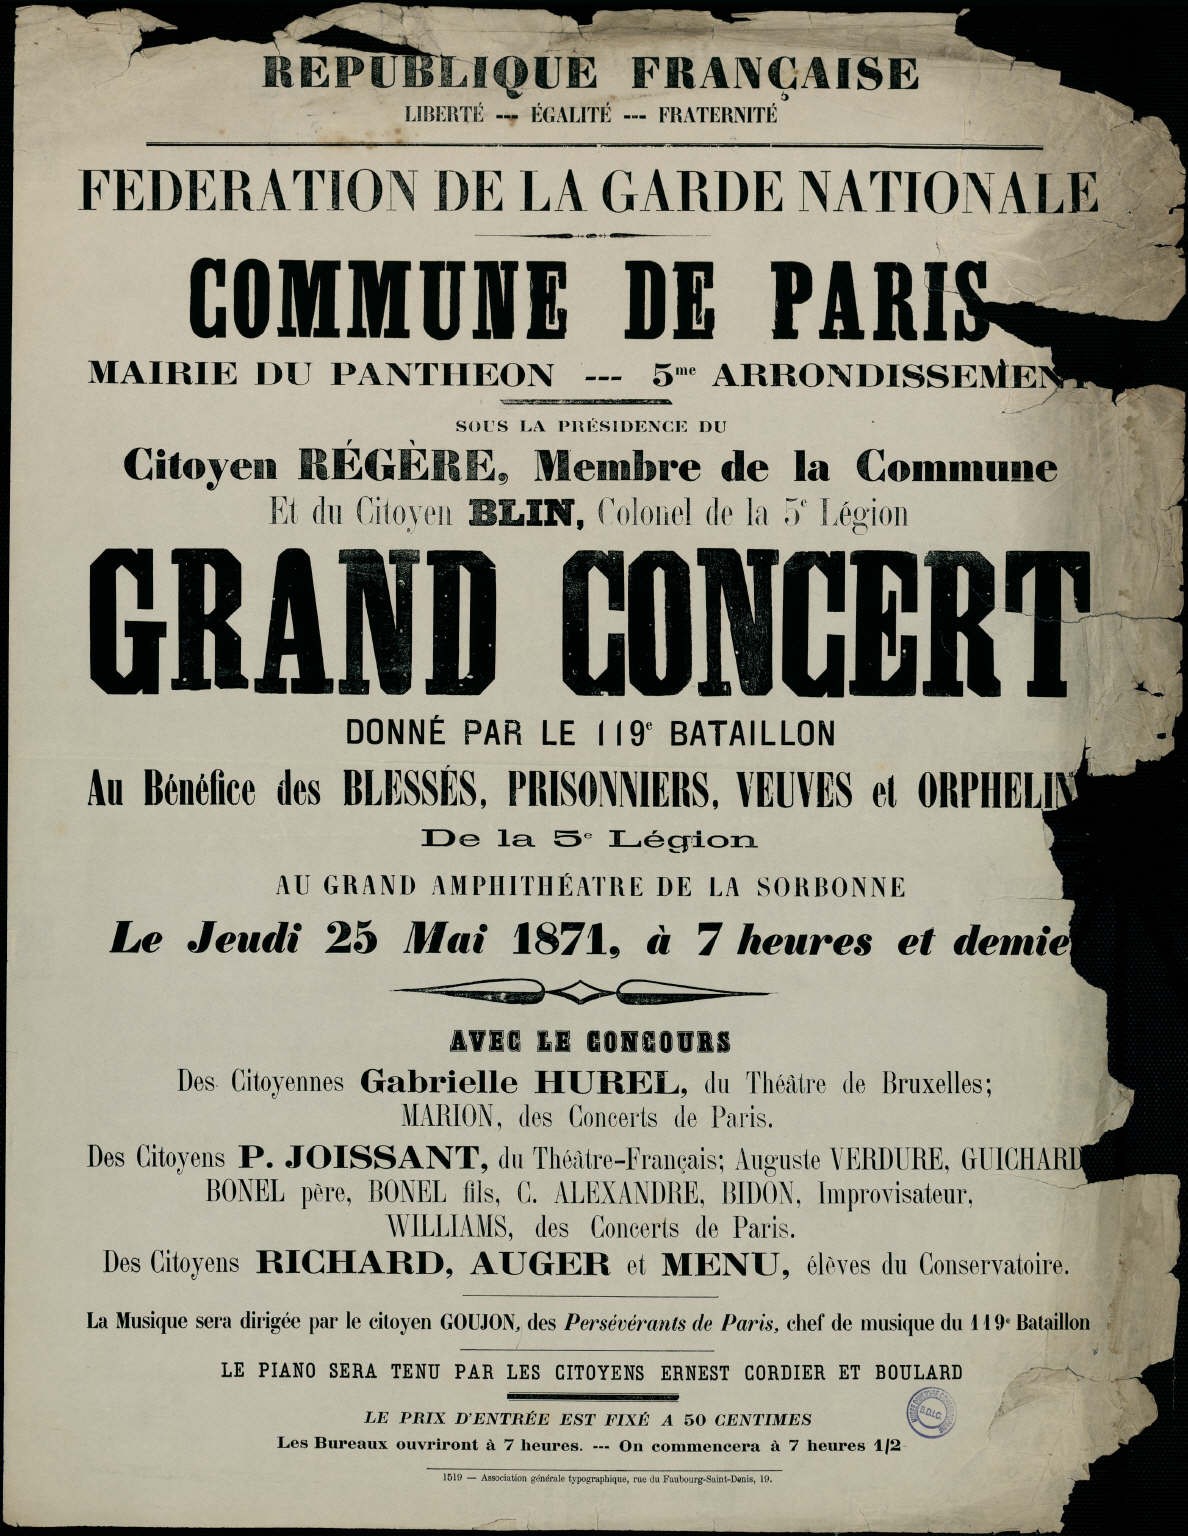 Affiche de la Commune de Paris - Annonce d'un concert le 25 mai 1871 au grand amphithéâtre de la Sorbonne (Source : argonnaute.parisnanterre.fr)